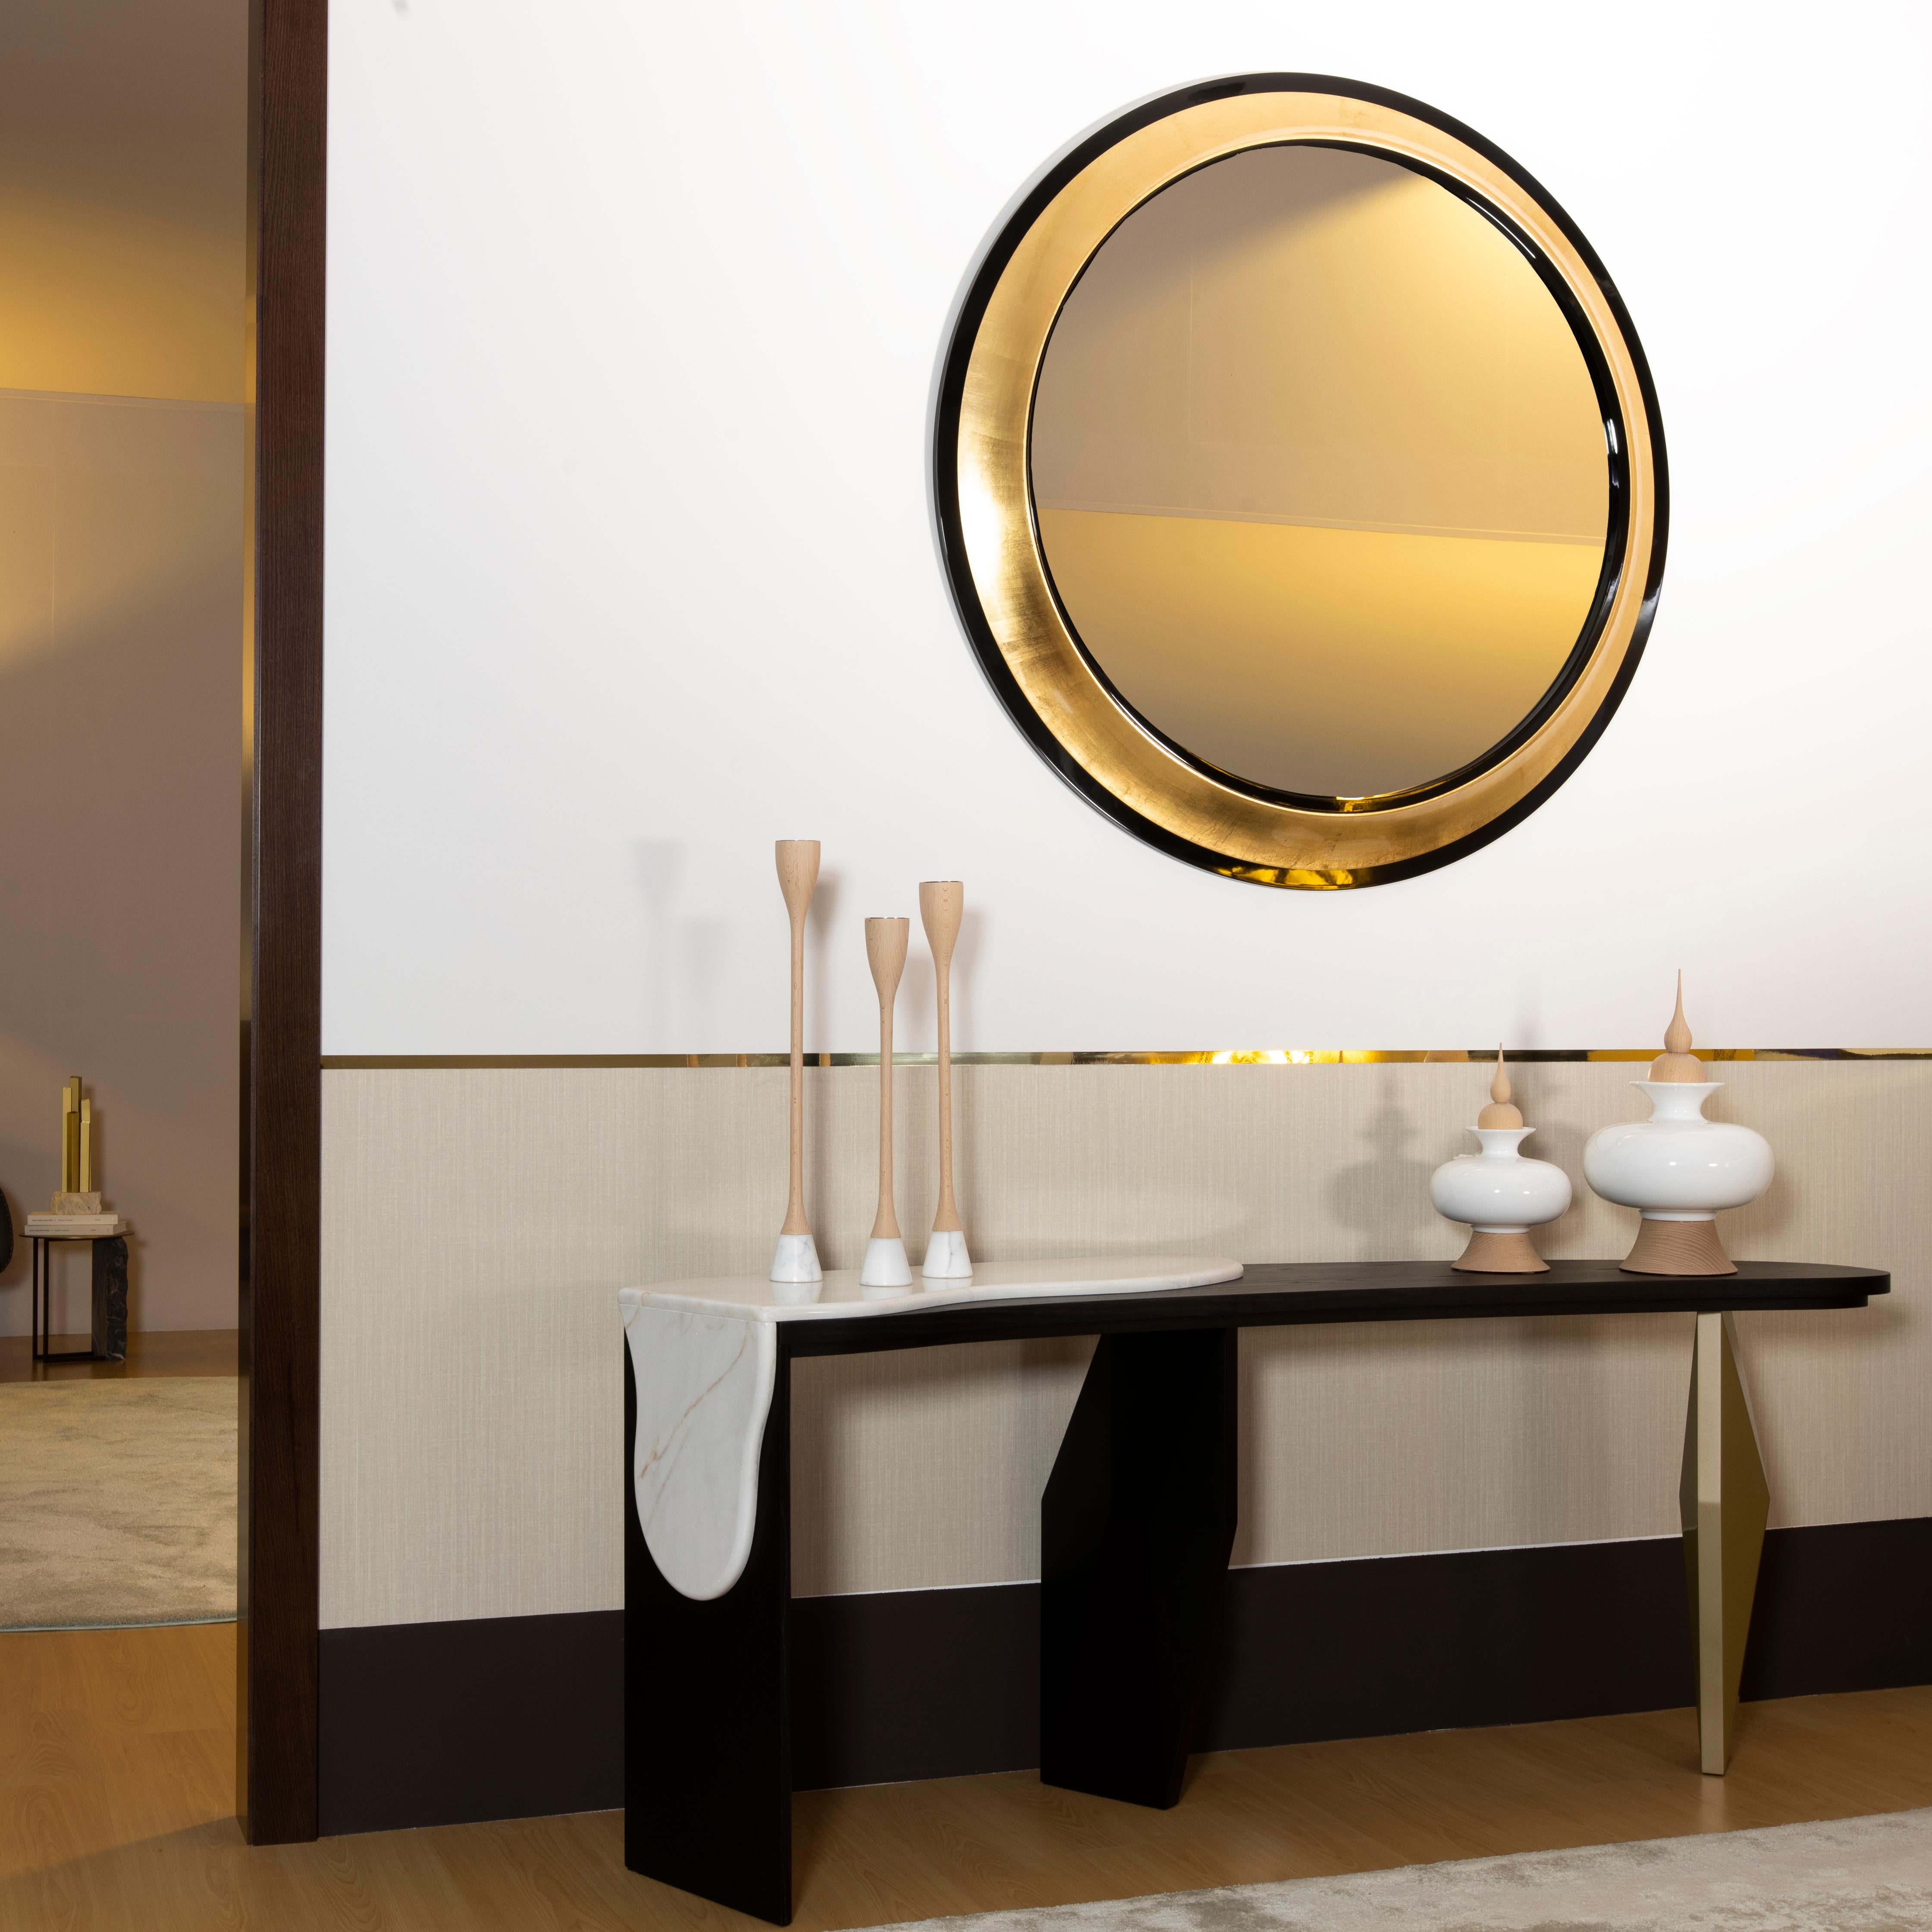 Miroir Grifo, Collection Collective, fait à la main au Portugal - Europe par GF Modern.

Grifo est un miroir rond de style classique qui reflète sa personnalité gracieuse. Le contraste saisissant entre les deux anneaux noirs et l'anneau central en